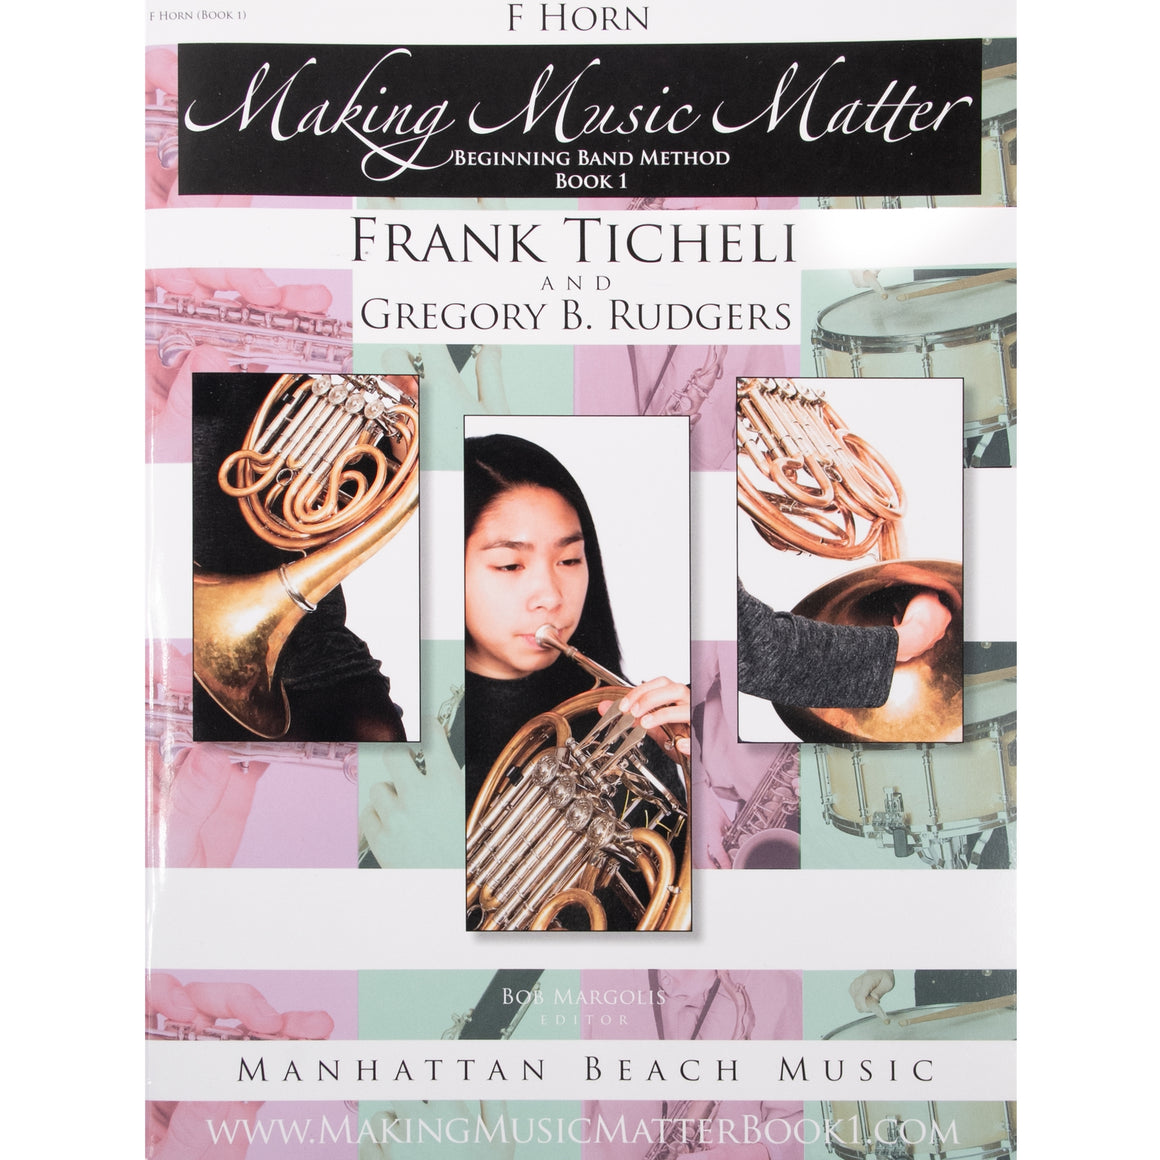 MANHATTAN BEACH 207006 Making Music Matter, F Horn (Book 1)